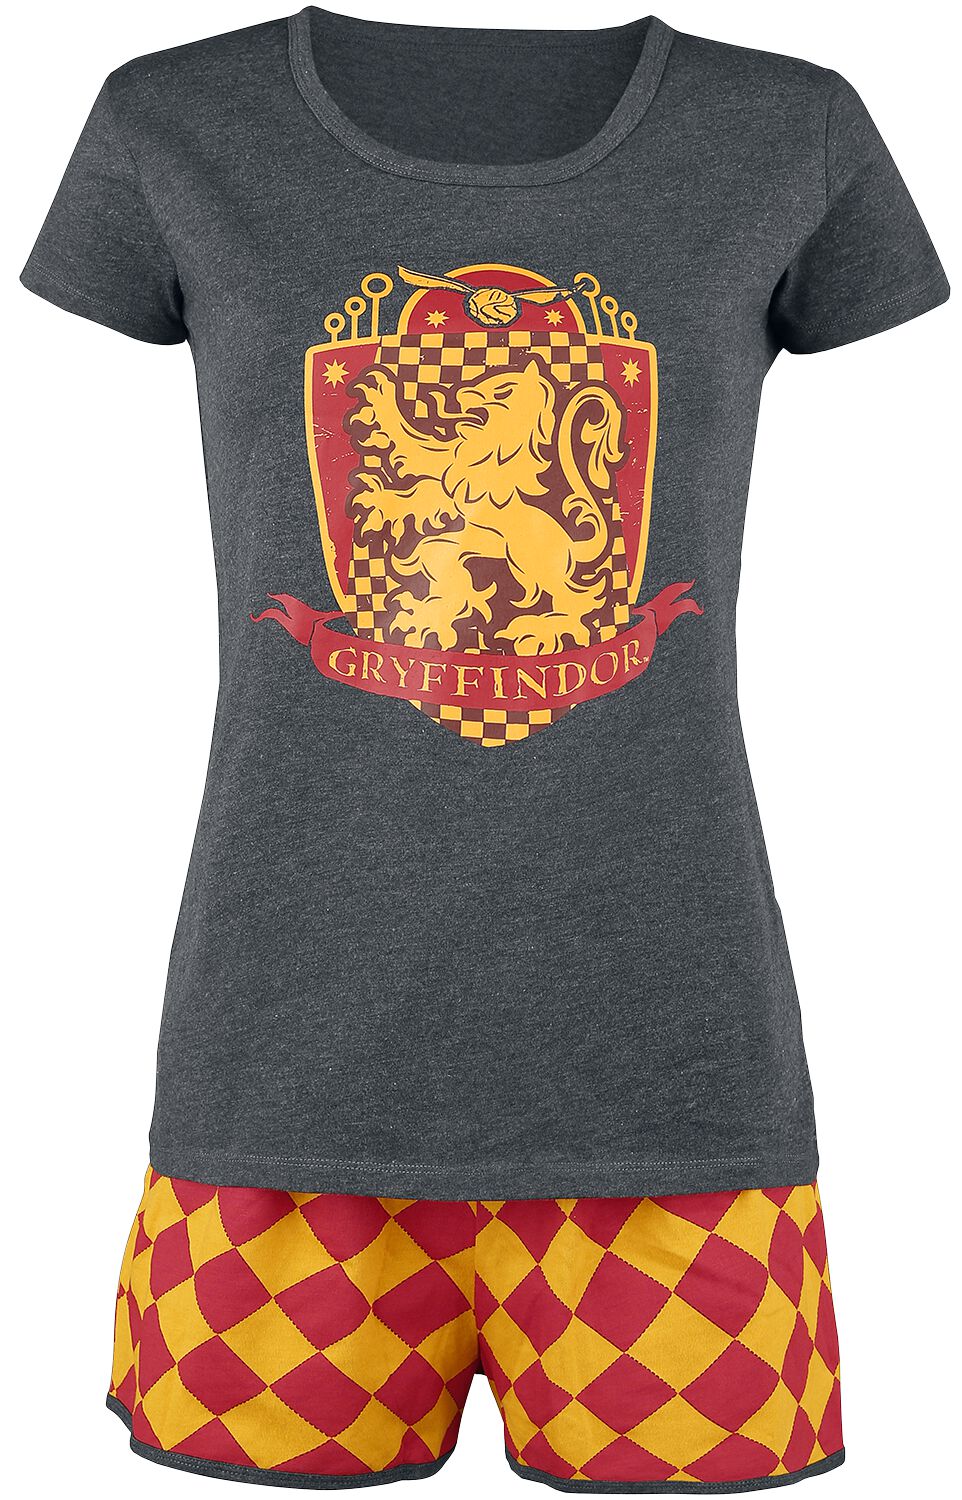 Harry Potter Schlafanzug - Gryffindor Quidditch - XS bis 5XL - für Damen - Größe S - grau/rot/gelb  - EMP exklusives Merchandise!